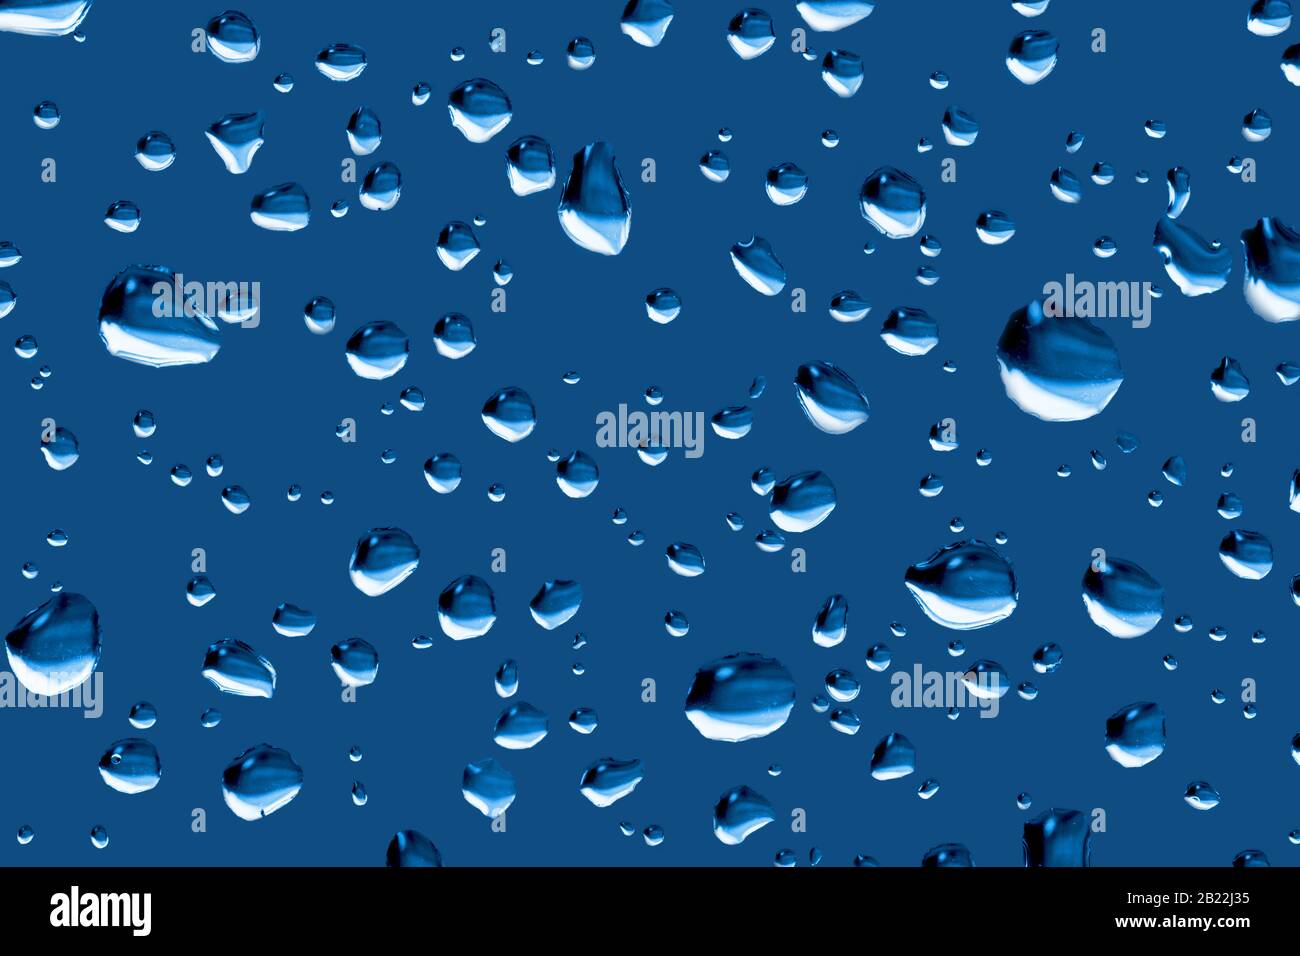 Gouttelettes de pluie sur une couleur de fenêtre ajustée pour s'adapter à Pantone 19-4052 Classic Blue, couleur de l'année 2020. Couleur Pantone de l'année 2020. Banque D'Images